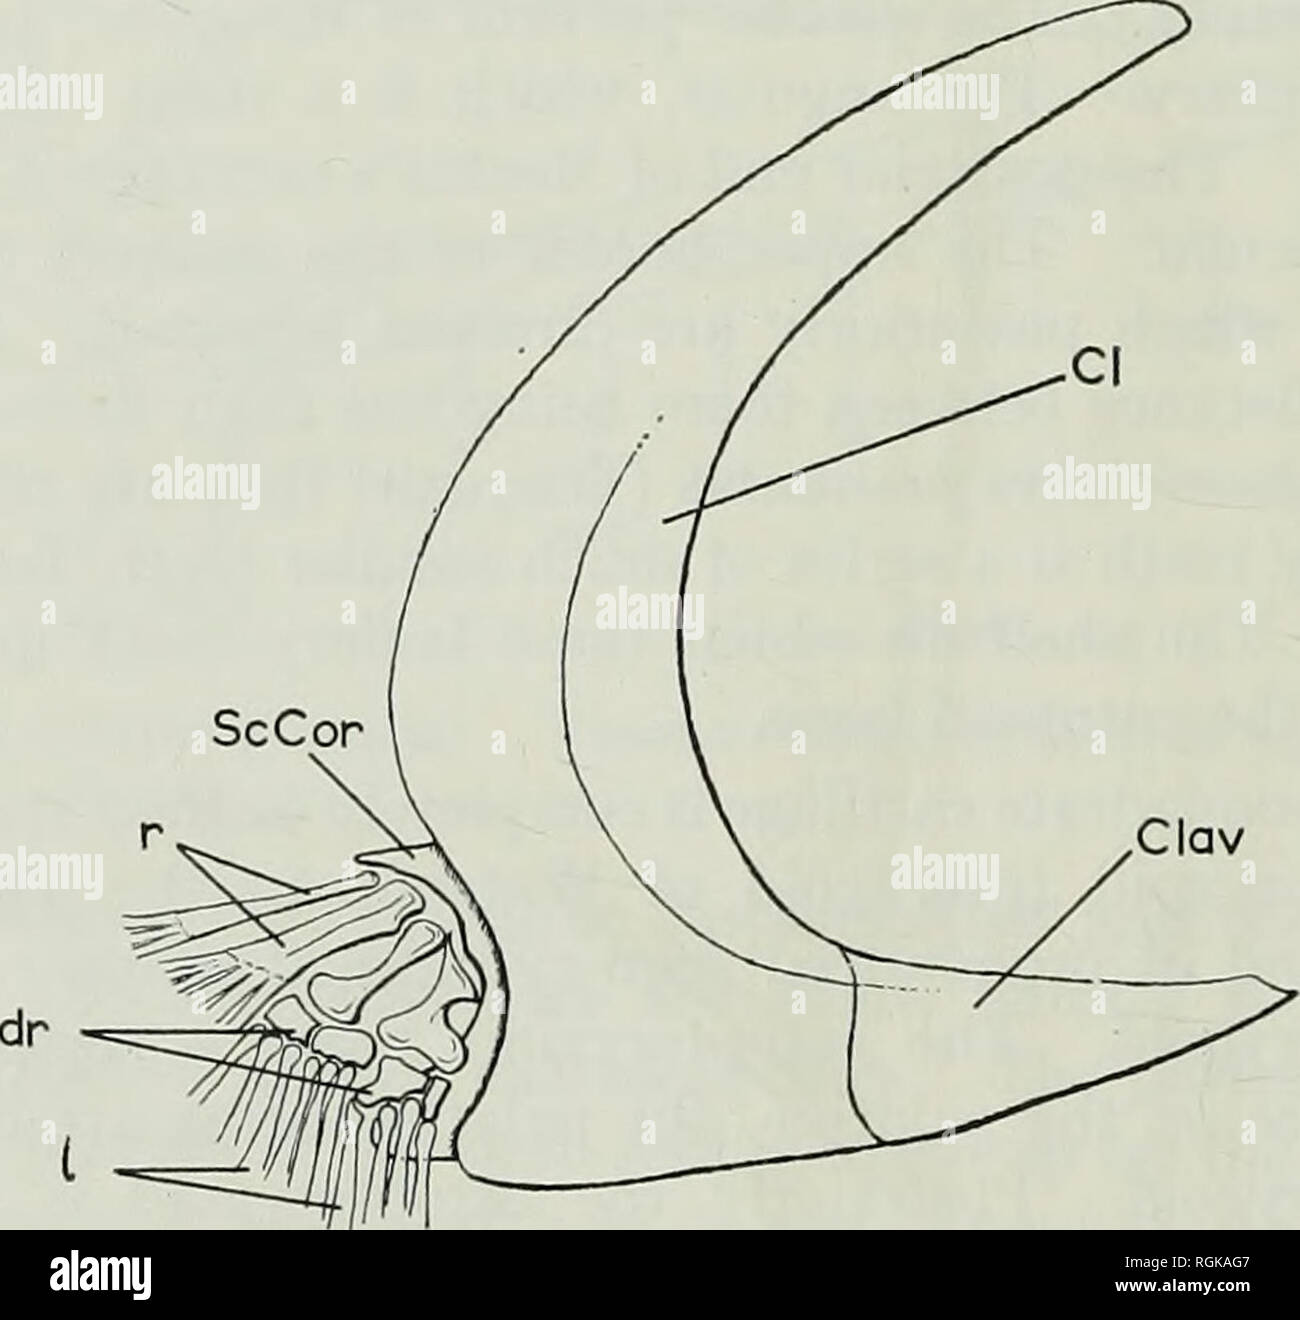 . Bollettino del Museo Britannico di storia naturale), la geologia. 270 Evoluzione del muso IN ACTINOPTERYGIANS le coppie di alette e le loro guaine. Il corpino primario è ossificata, sia il scapulocoracoid e mesocoracoid regioni essendo evidente. Modello R.S.M. 1857.33.71 mostra chiaramente quattro elementi radiali (Testo-fig. 3). La seconda radiale dal bordo laterale della pinna è sagomata a forma di clessidra, mentre i due membri più interne sono stout e quasi aste rettilinee. DistaUy i primi due radials (numerazione dal bordo laterale) articolare con quattro più piccole ossifications ; questi rappresentano probabilmente il sistema operativo Foto Stock